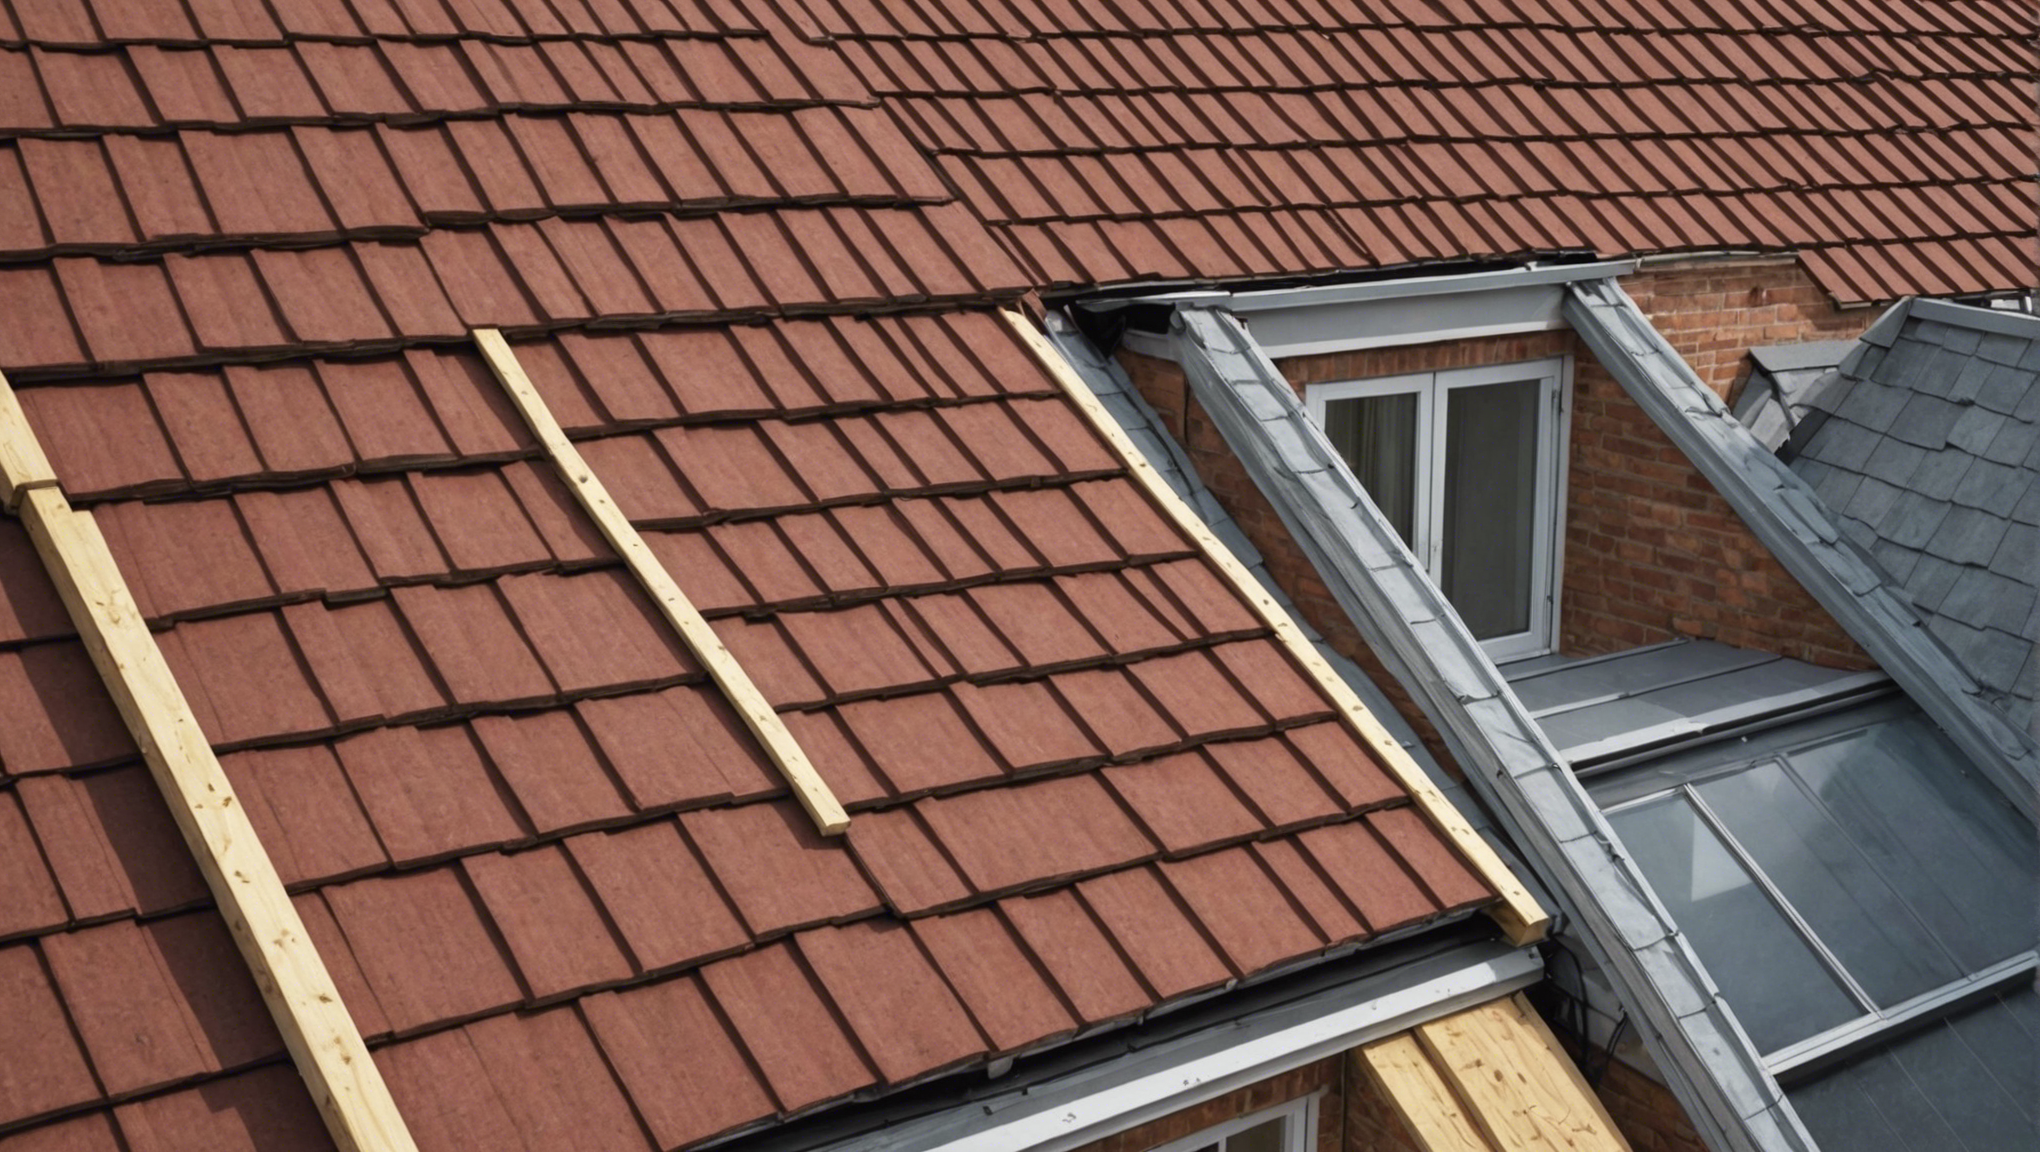 découvrez comment isoler votre toiture de l'extérieur efficacement et durablement. conseils pratiques et techniques pour une isolation optimale de votre toit.